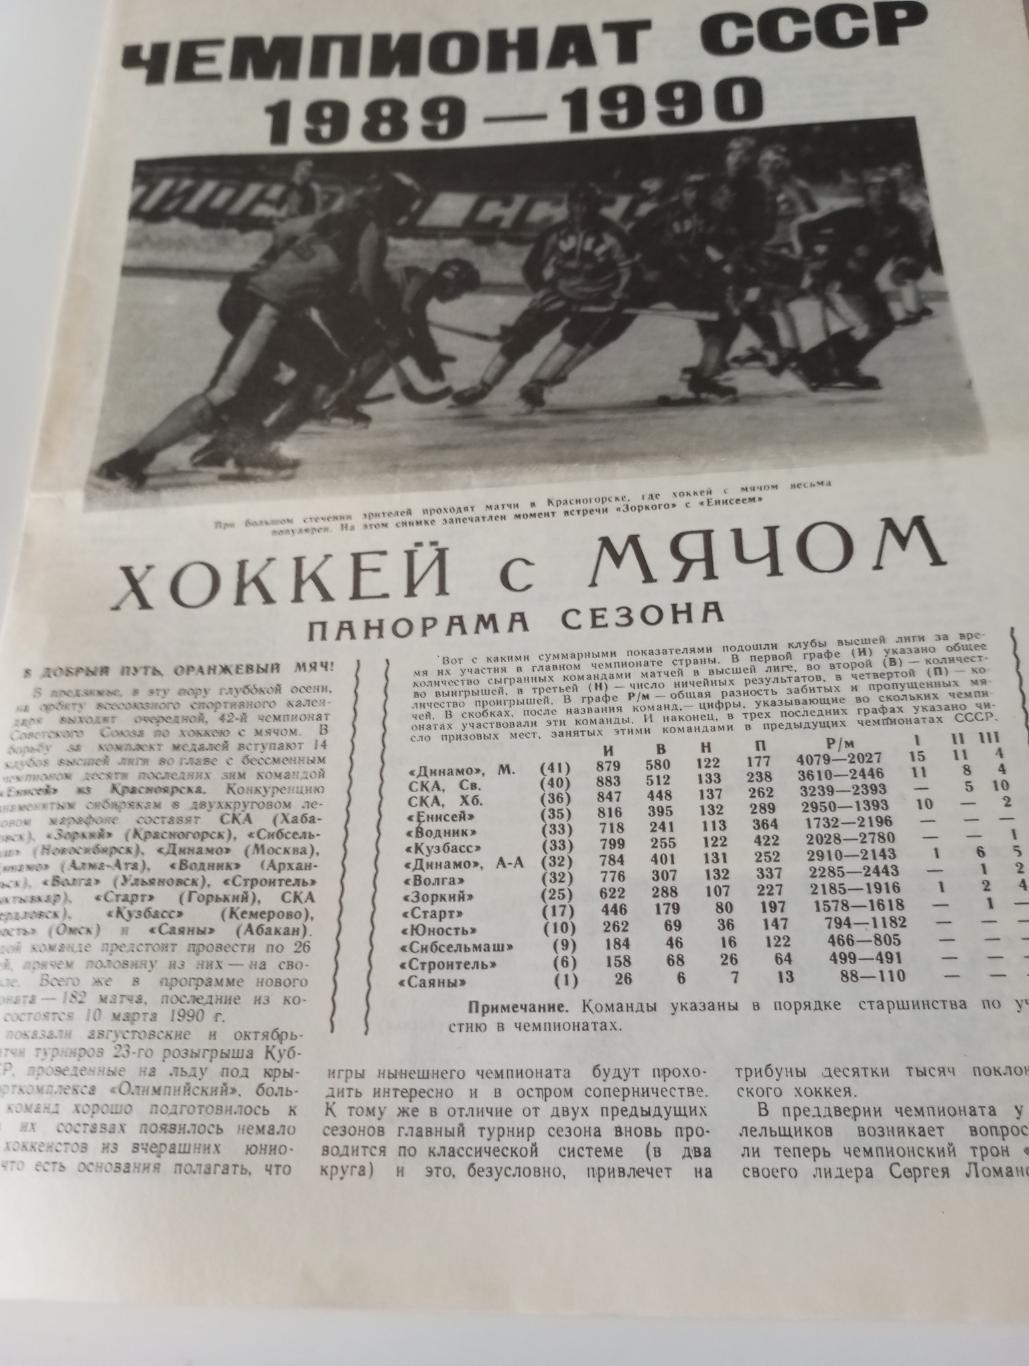 Чемпионат СССР 1989/1990 - Хоккей с мячом (Панорама сезона) 1